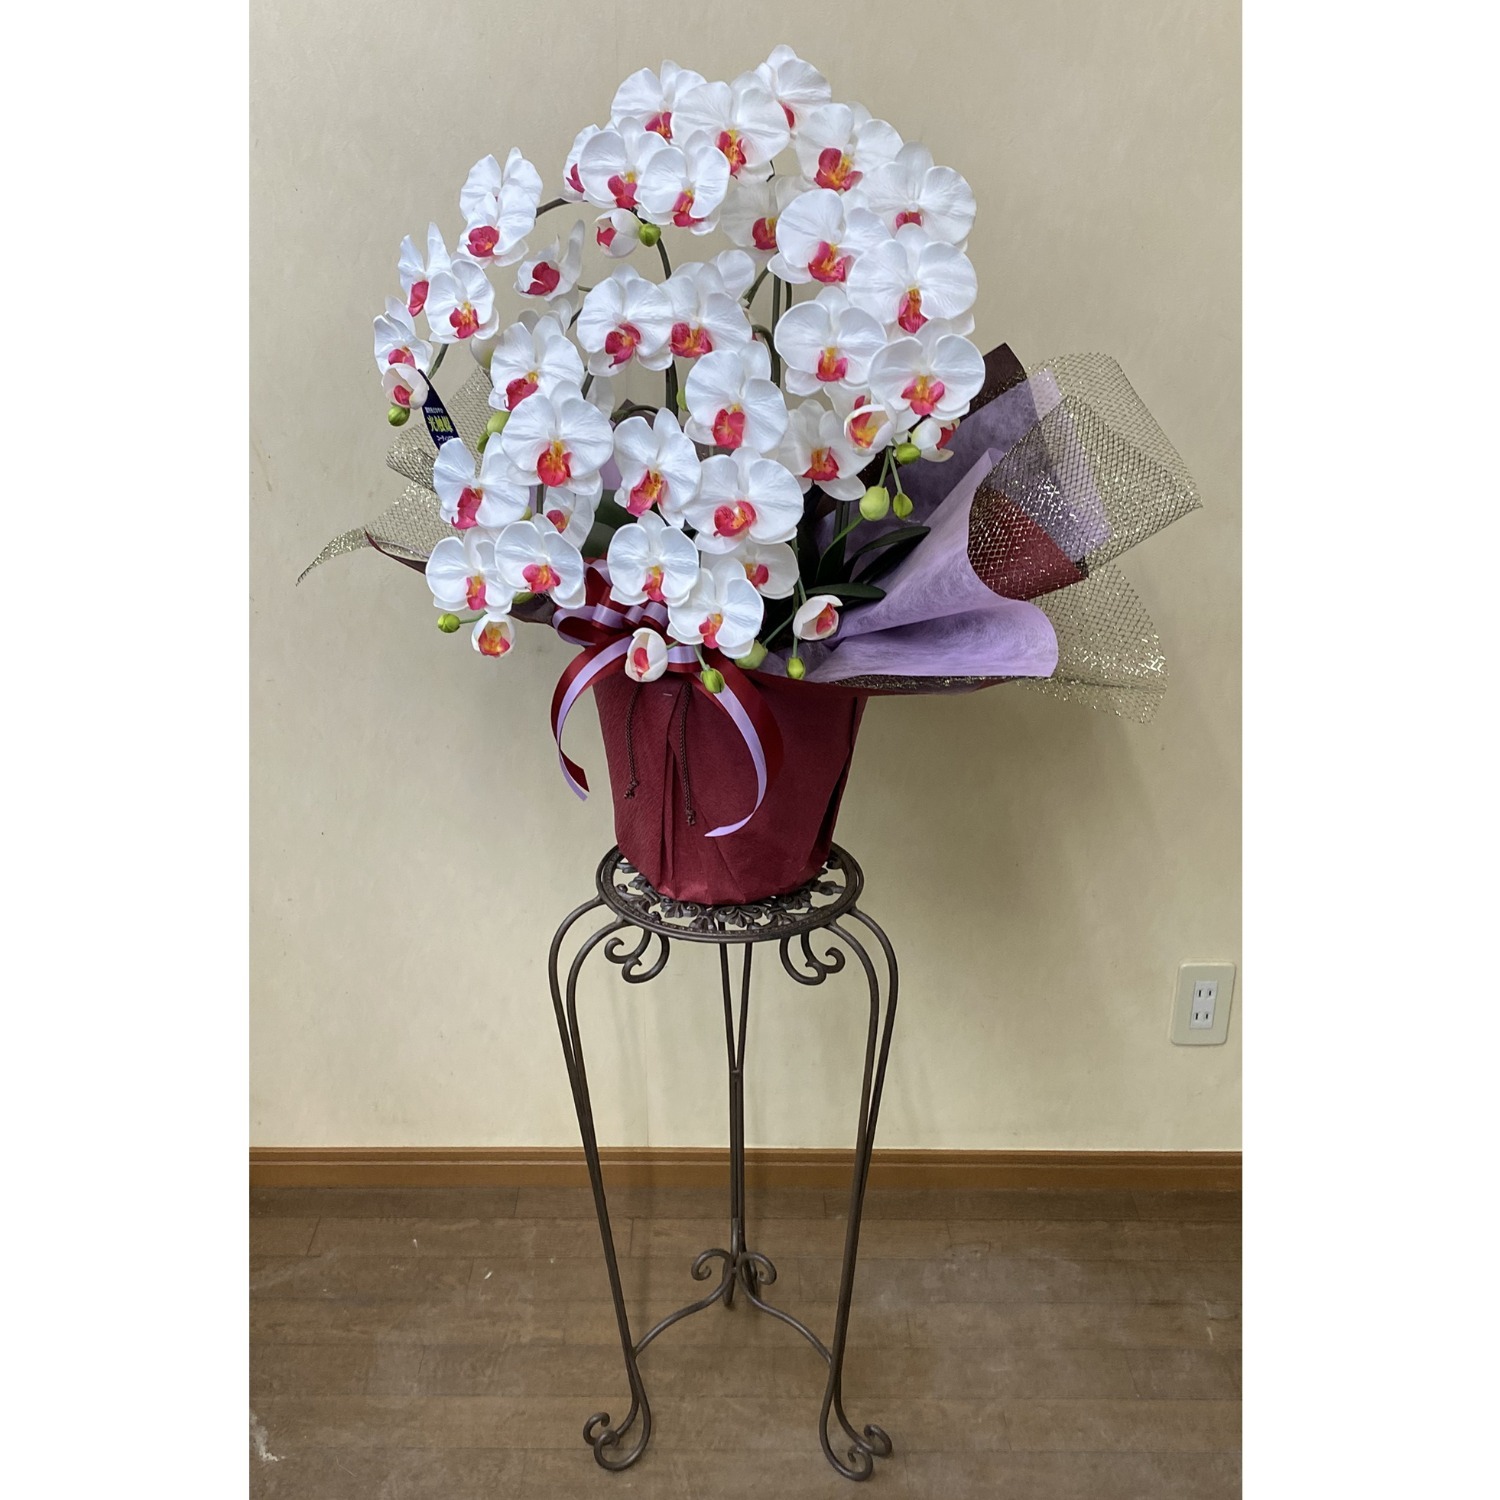 光触媒 造花 胡蝶蘭 中型 白赤 5本立ち 花台 アイアン | 移転祝い 開店祝い 法人ギフト販売のアンジェリック